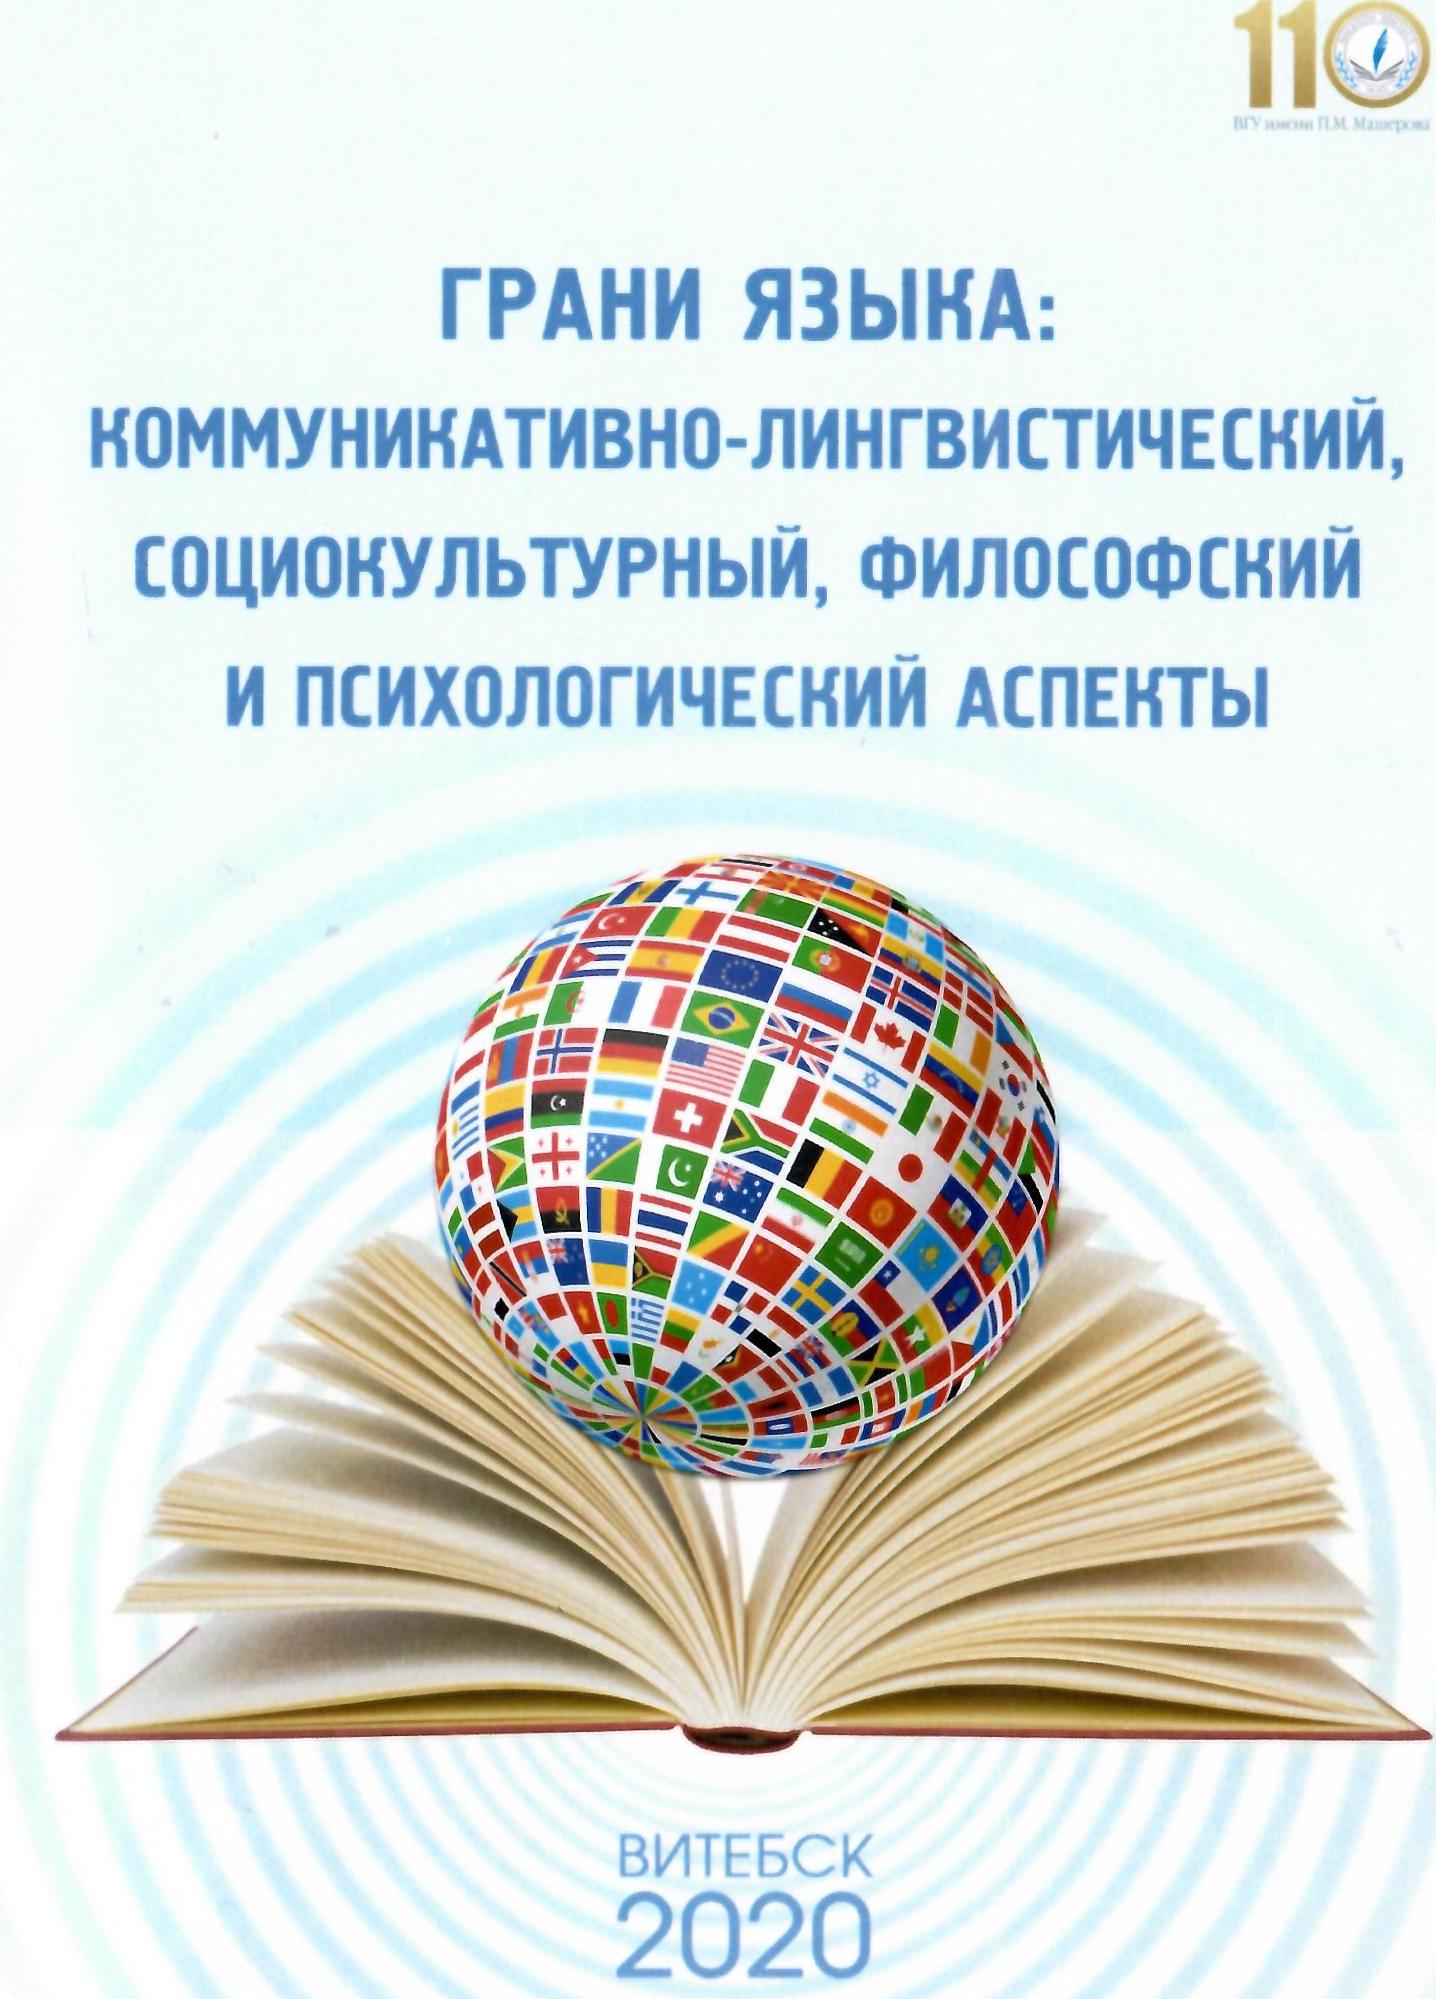 обложка Грани языка 2020